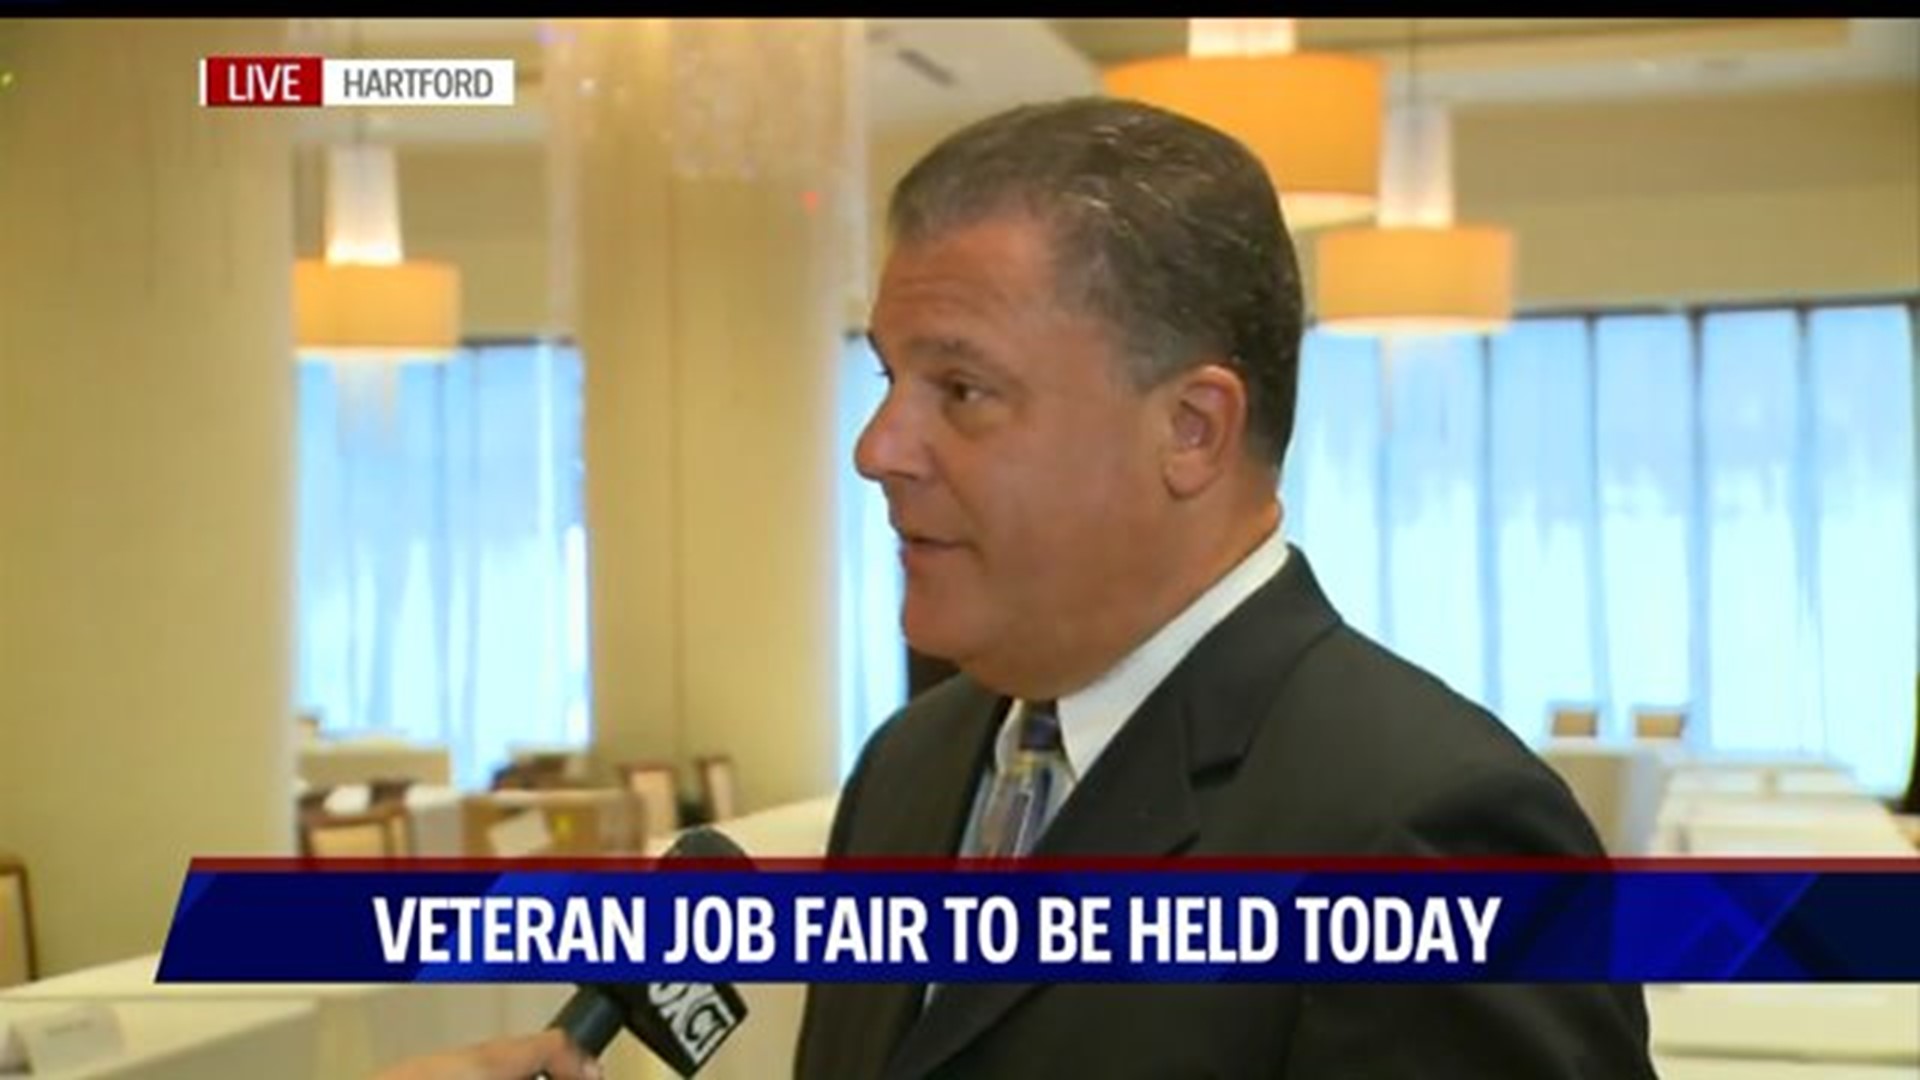 Veterans job fair